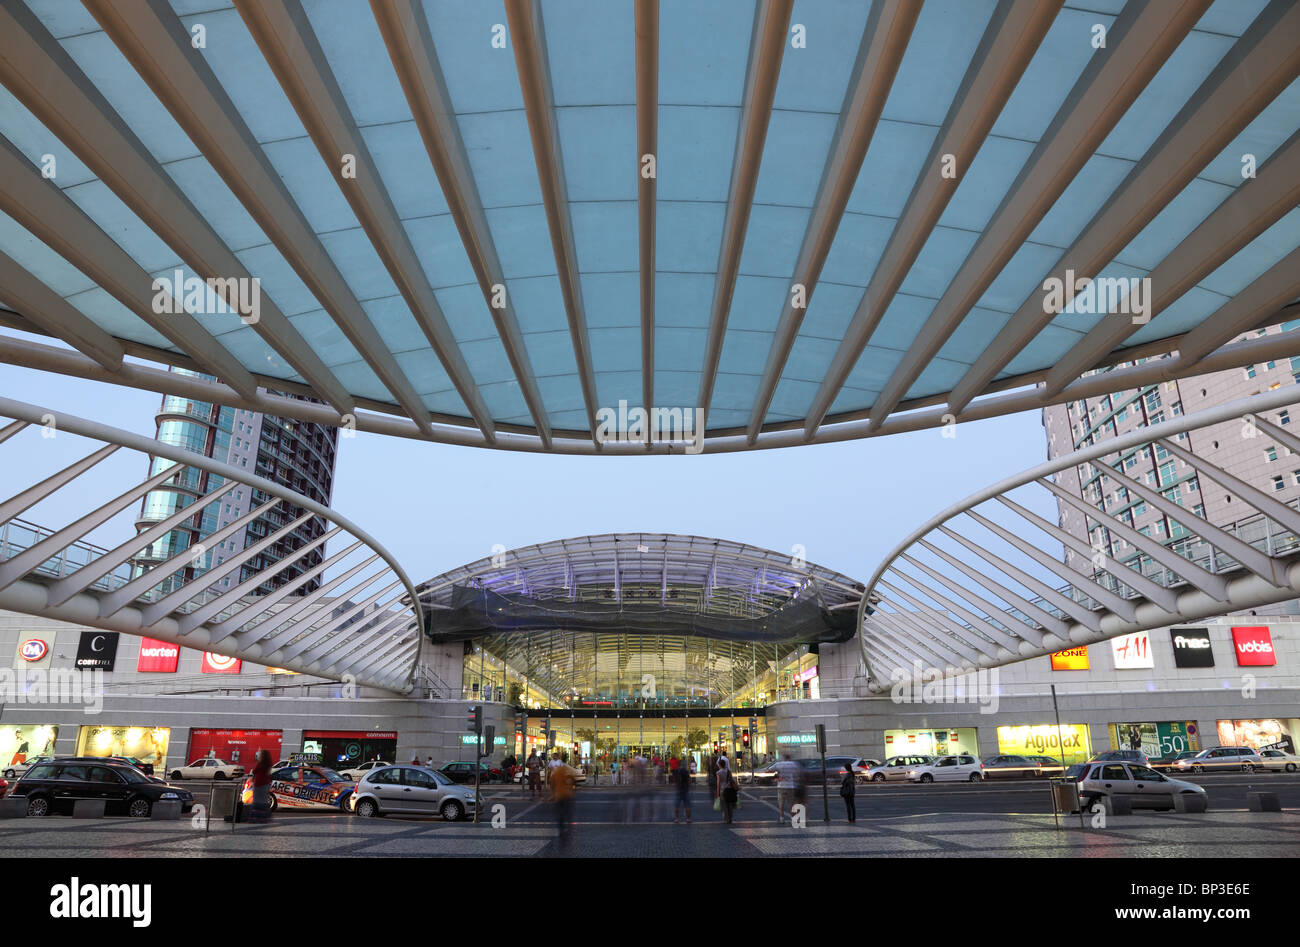 Gare do Oriente - einer der wichtigsten Bahnhöfe in Lissabon, Portugal Stockfoto